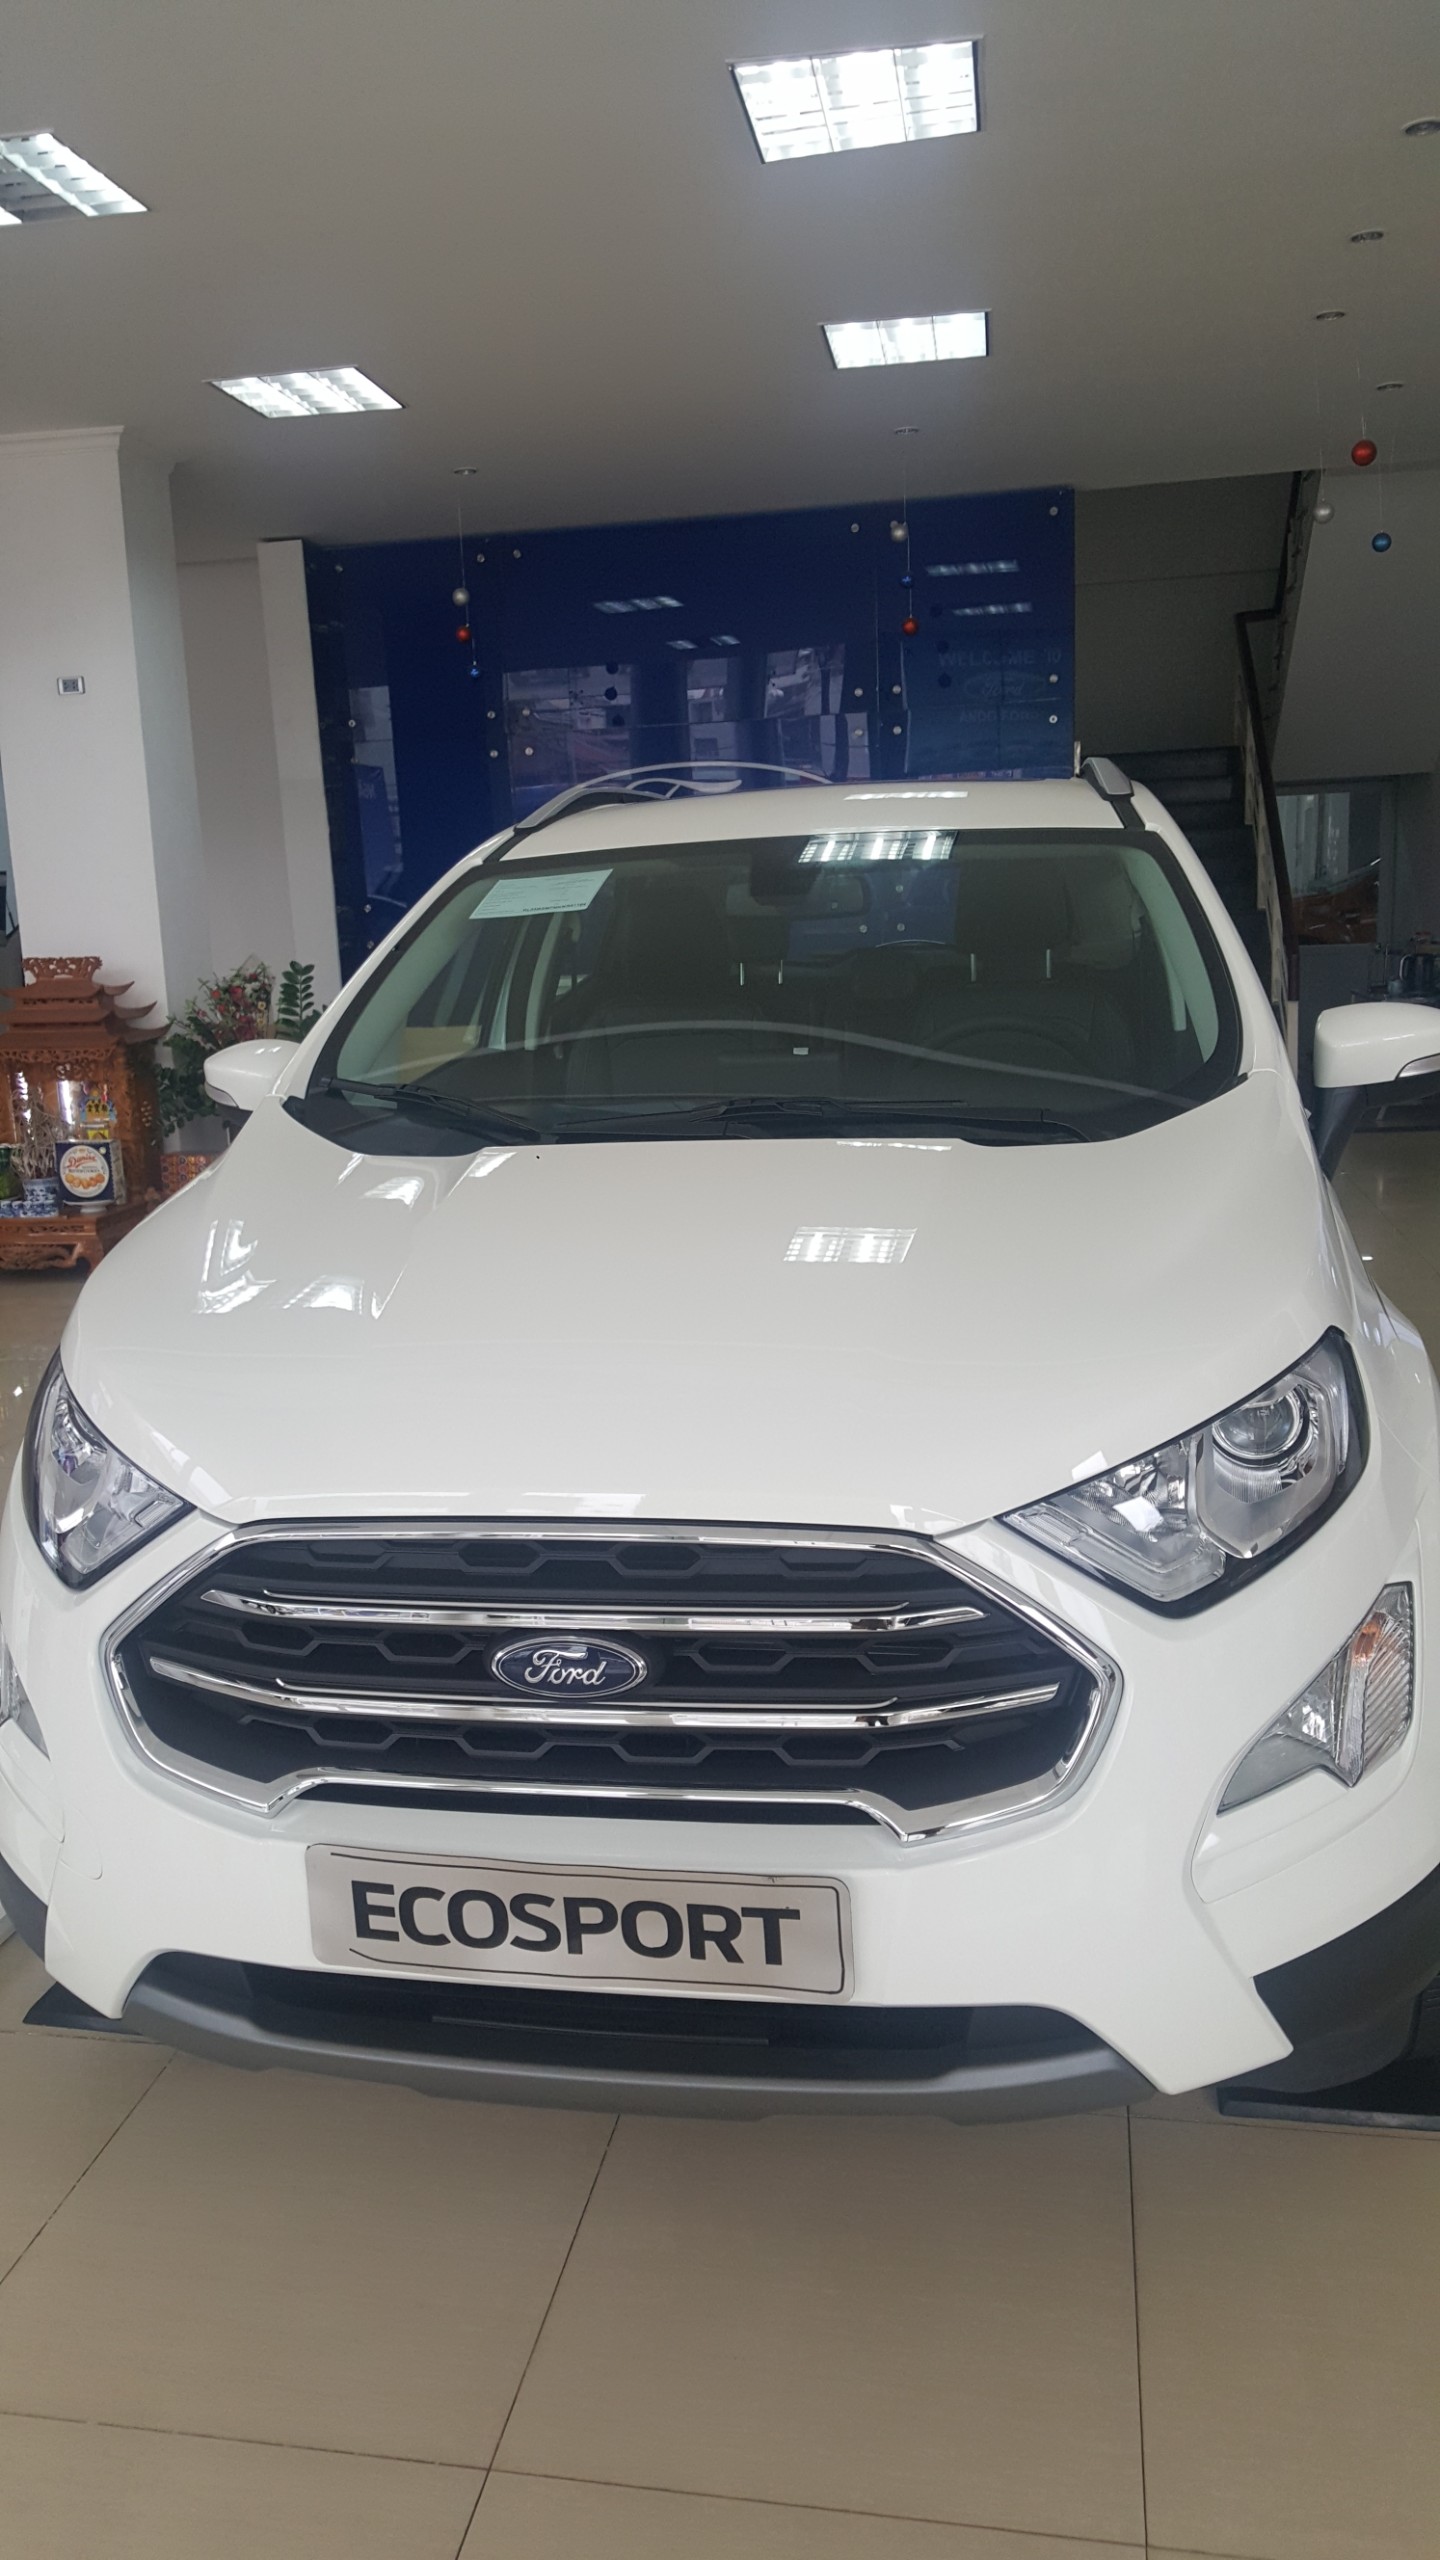 Ford EcoSport 2019 - Ecosport giảm giá kịch sàn, ưu đãi tặng nhiều phụ kiện